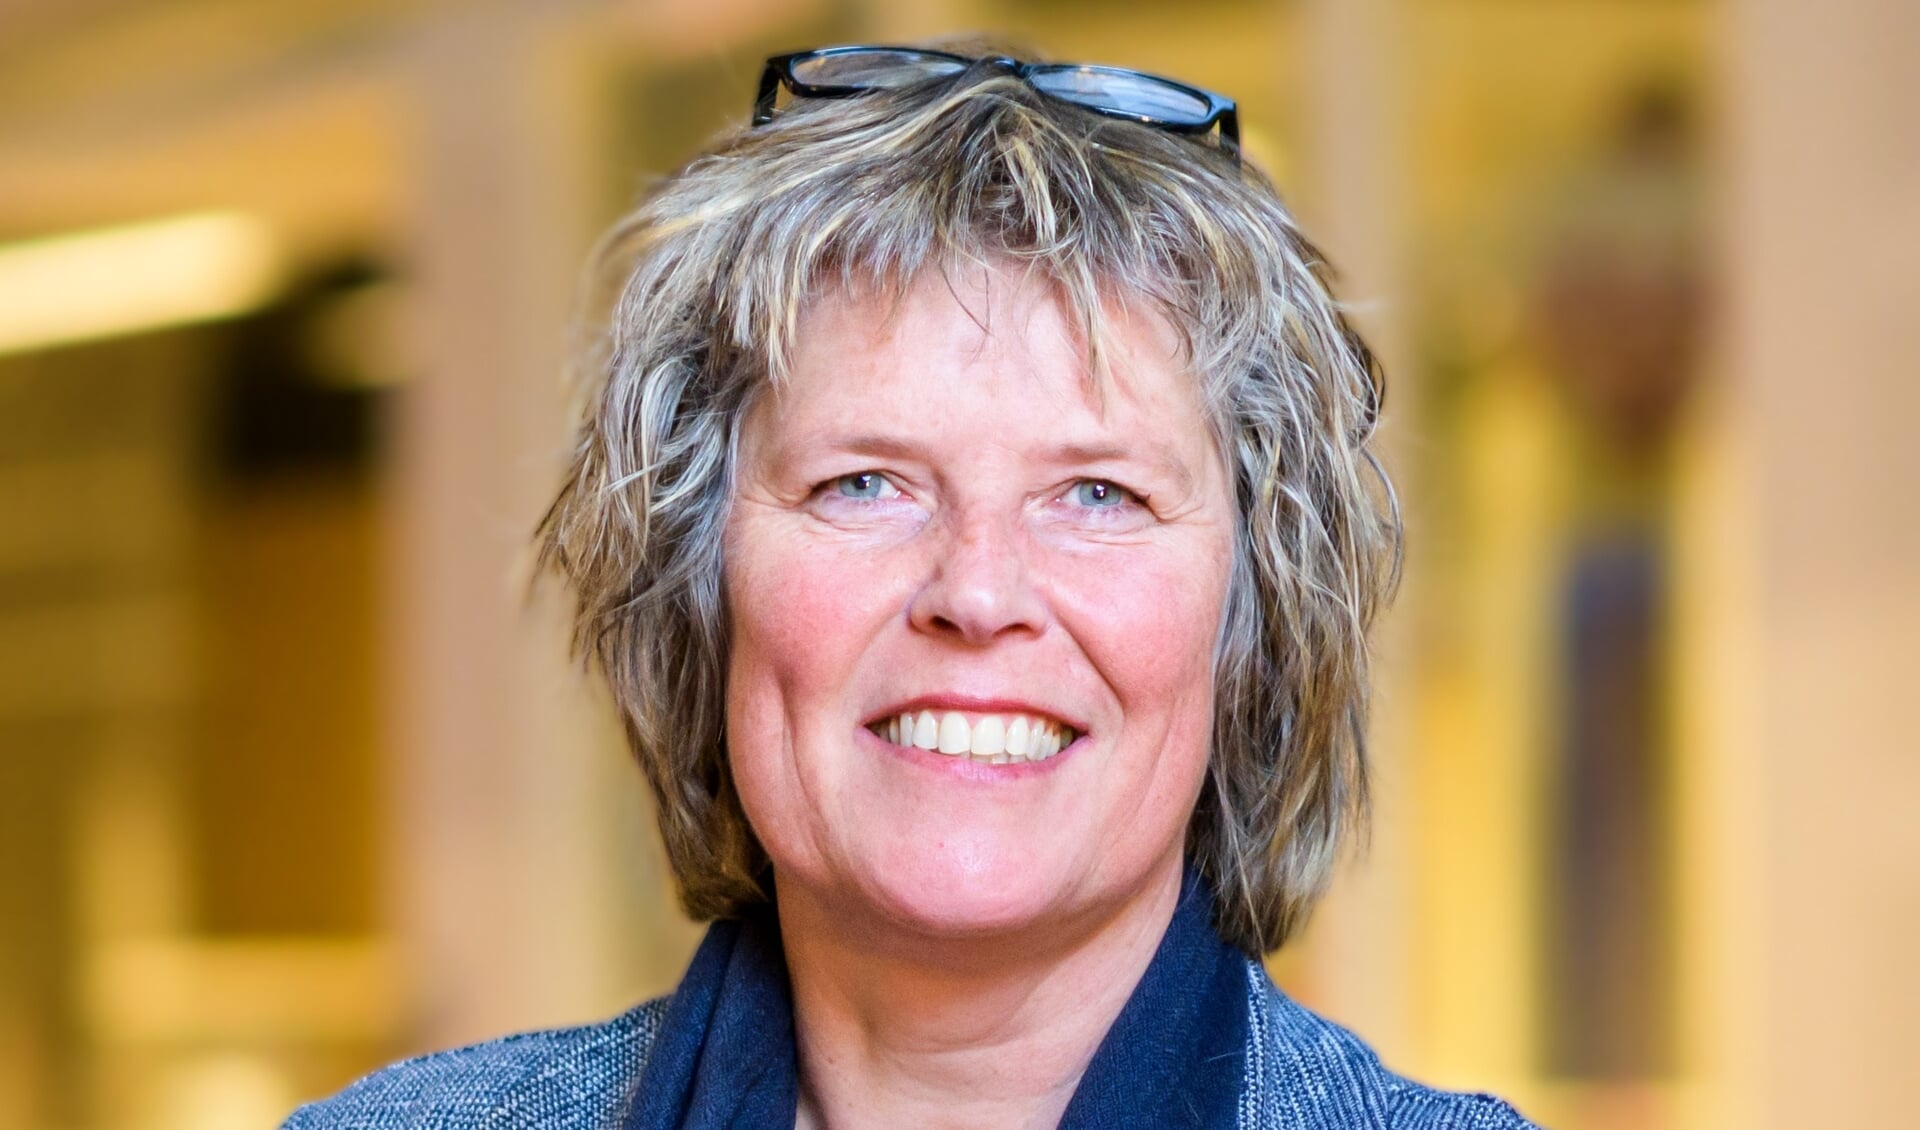 Barbara Baelemans (51) is de nieuwe algemeen directeur voortgezet onderwijs Veghel (VO Veghel).